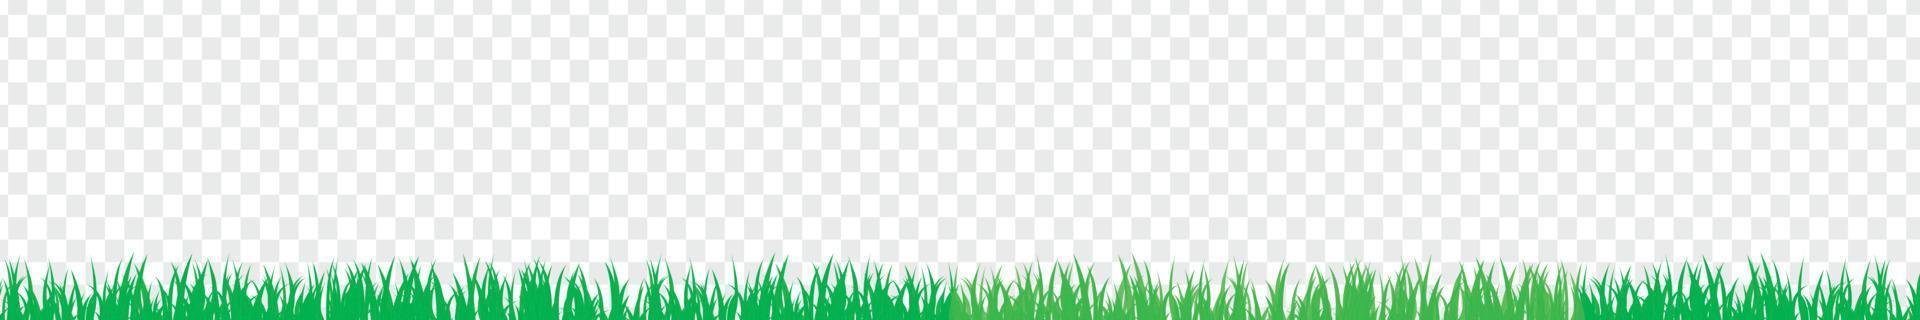 bordo di erba senza giunte realistico verde brillante di vettore isolato su sfondo trasparente